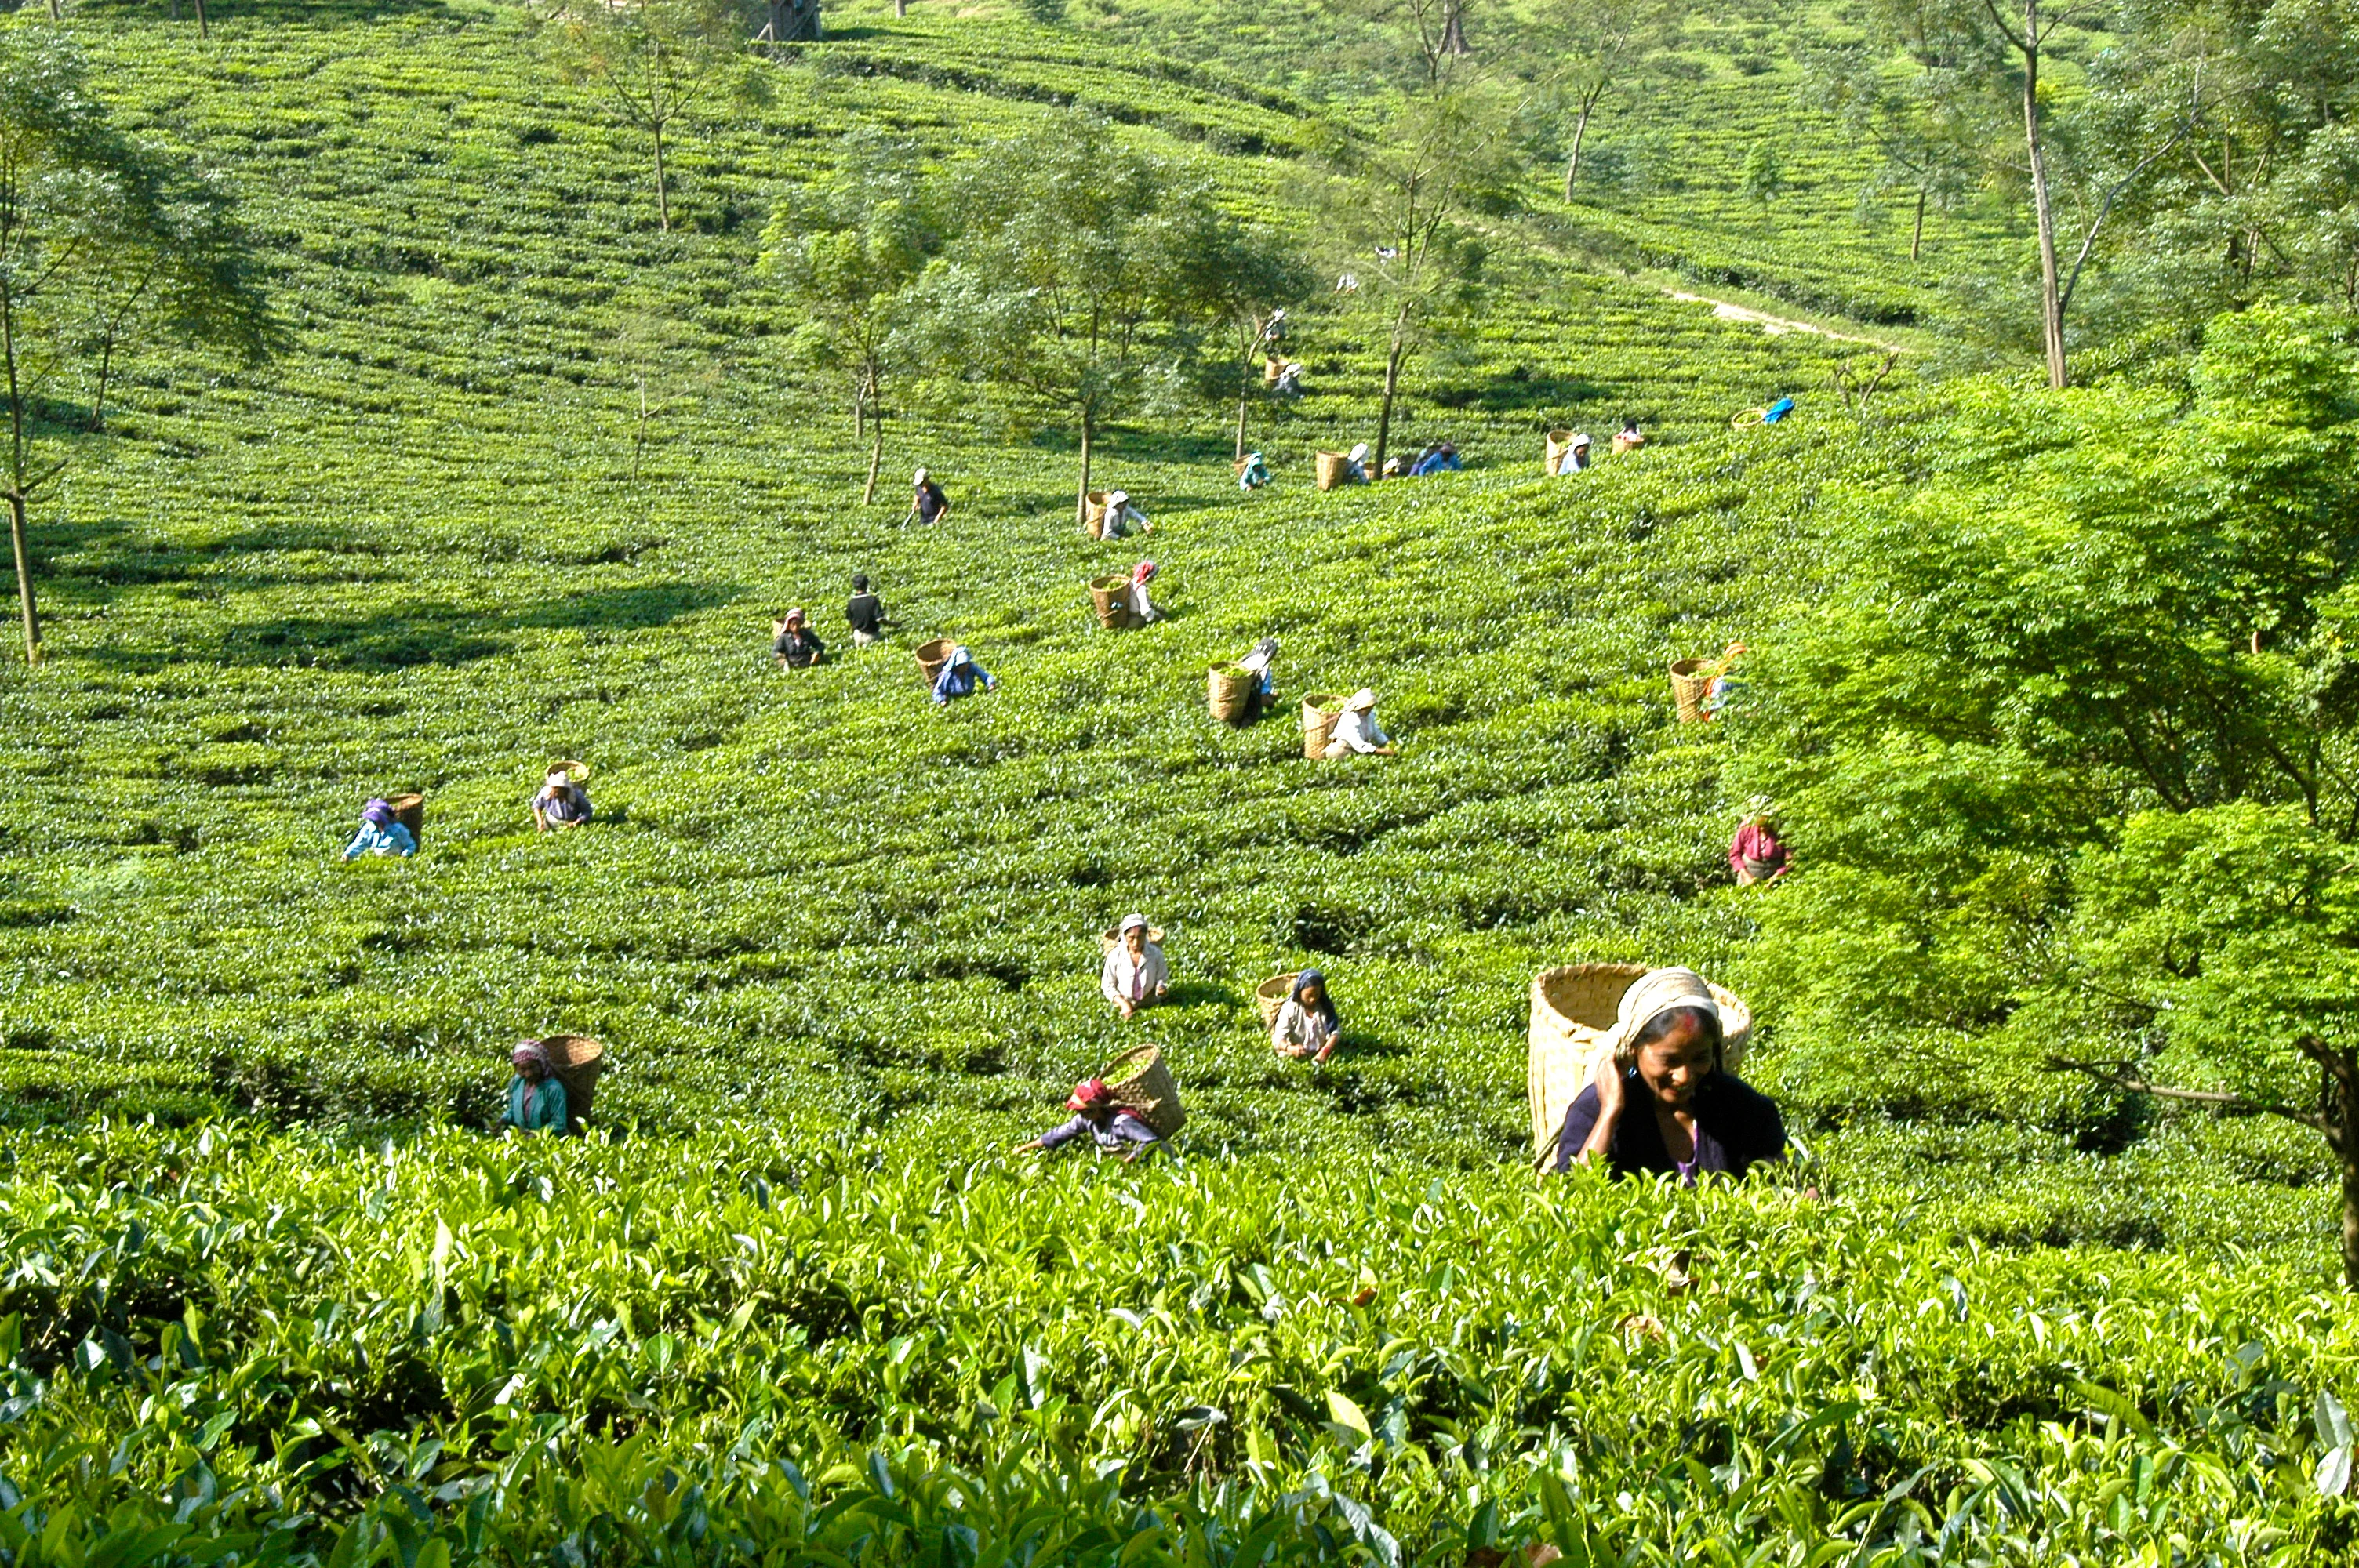 Darjeeling tea fields